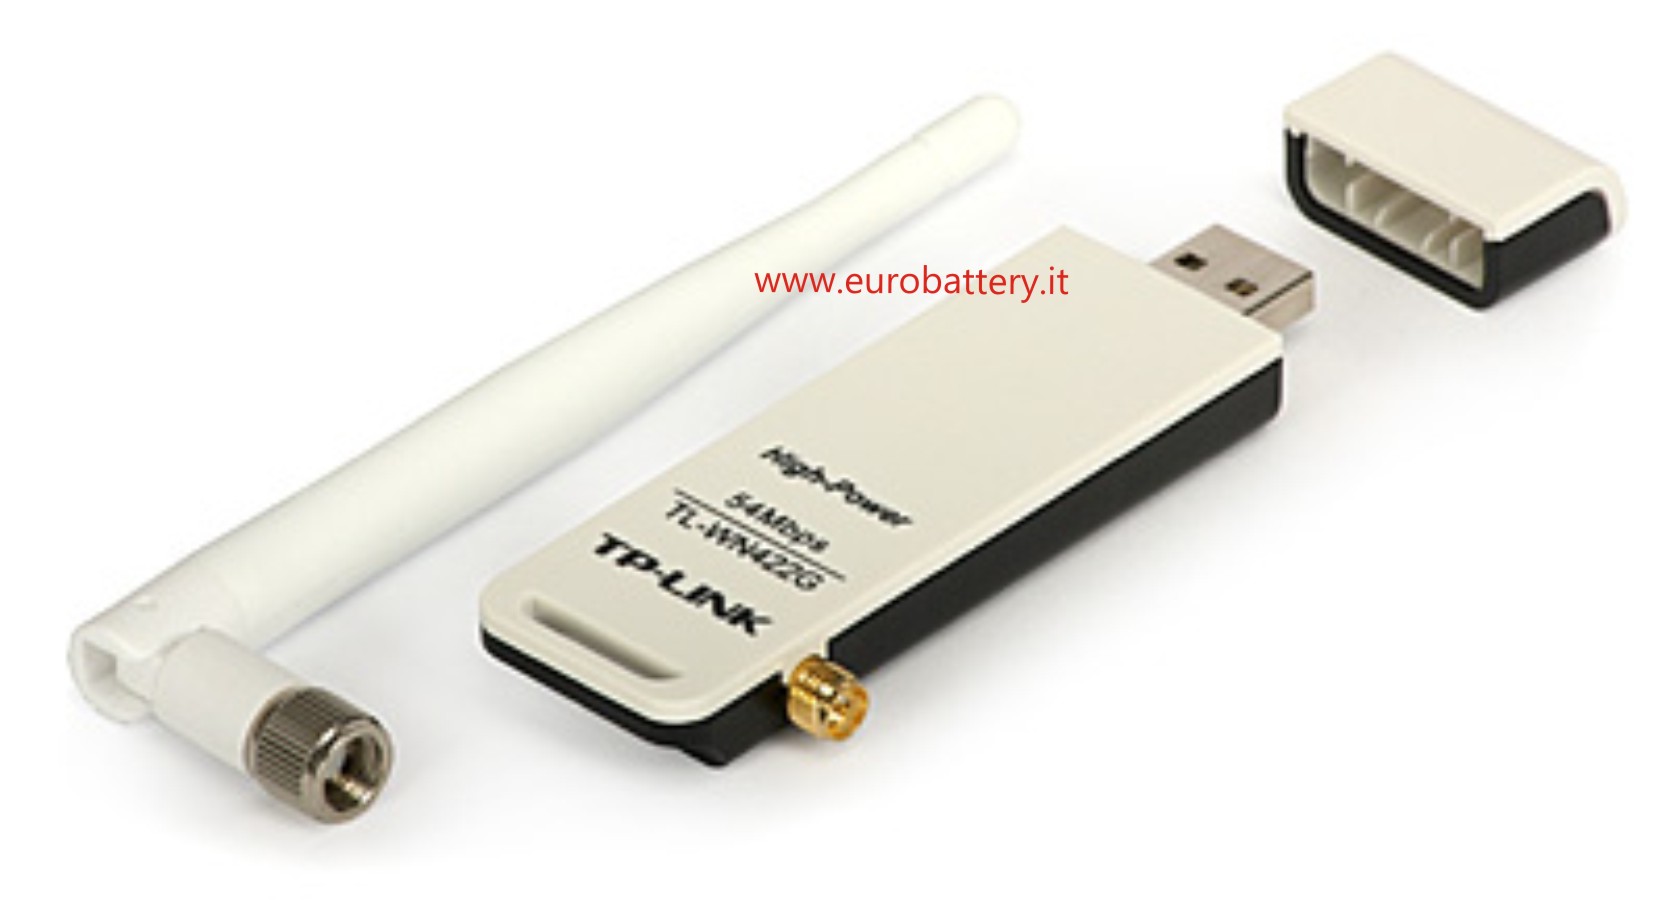 CHIAVETTA WIRELESS USB 2.0 54 Mbps TP-LINK TL-WN422G